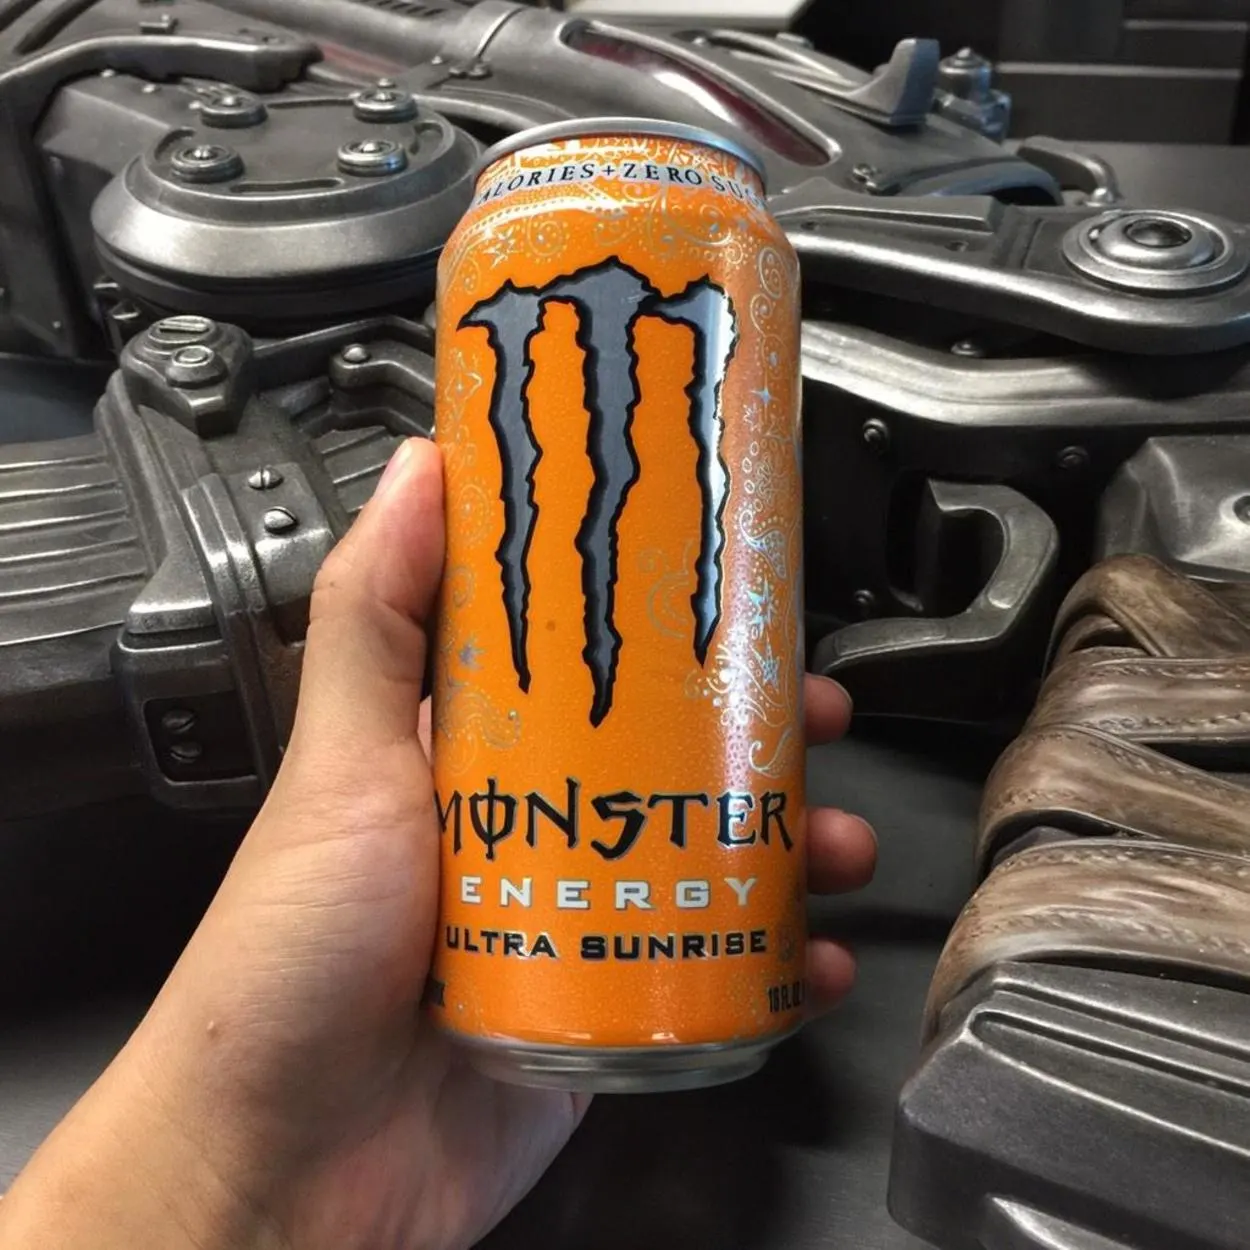 Monster Energy Ultra Sunrise.